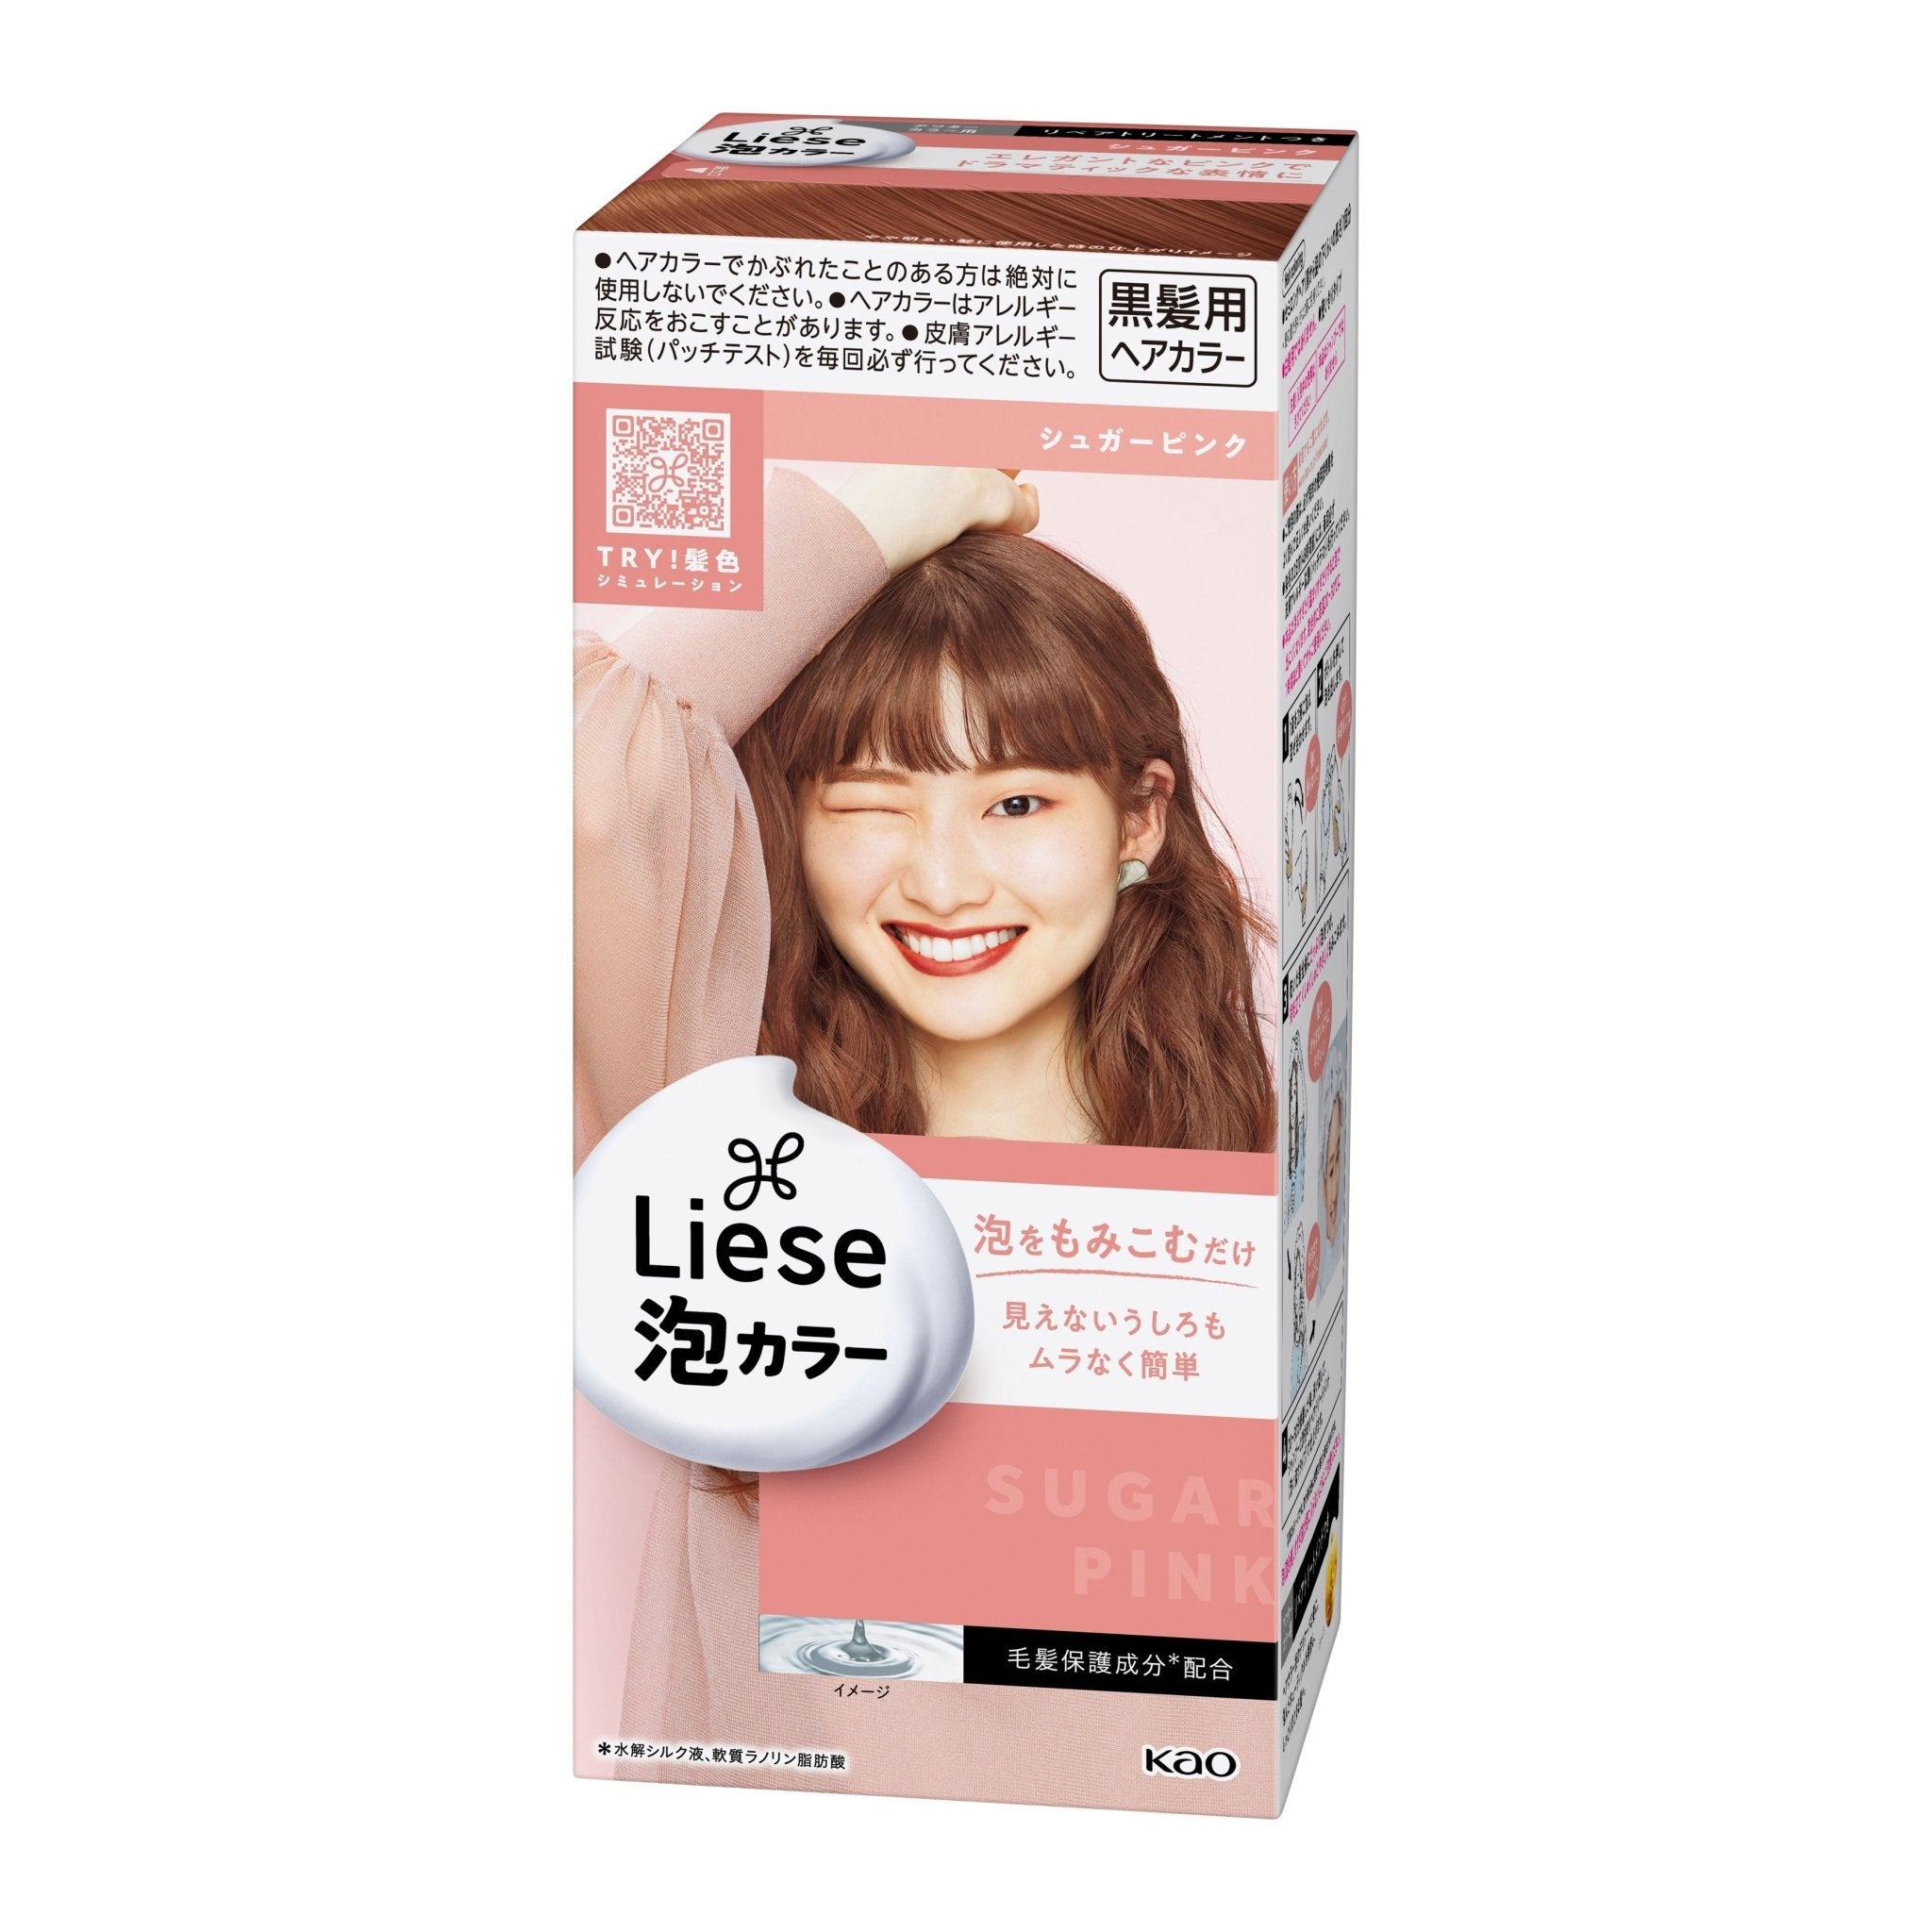 KAO Liese Bubble Hair Color Sugar Pink - Kao | Kiokii and...